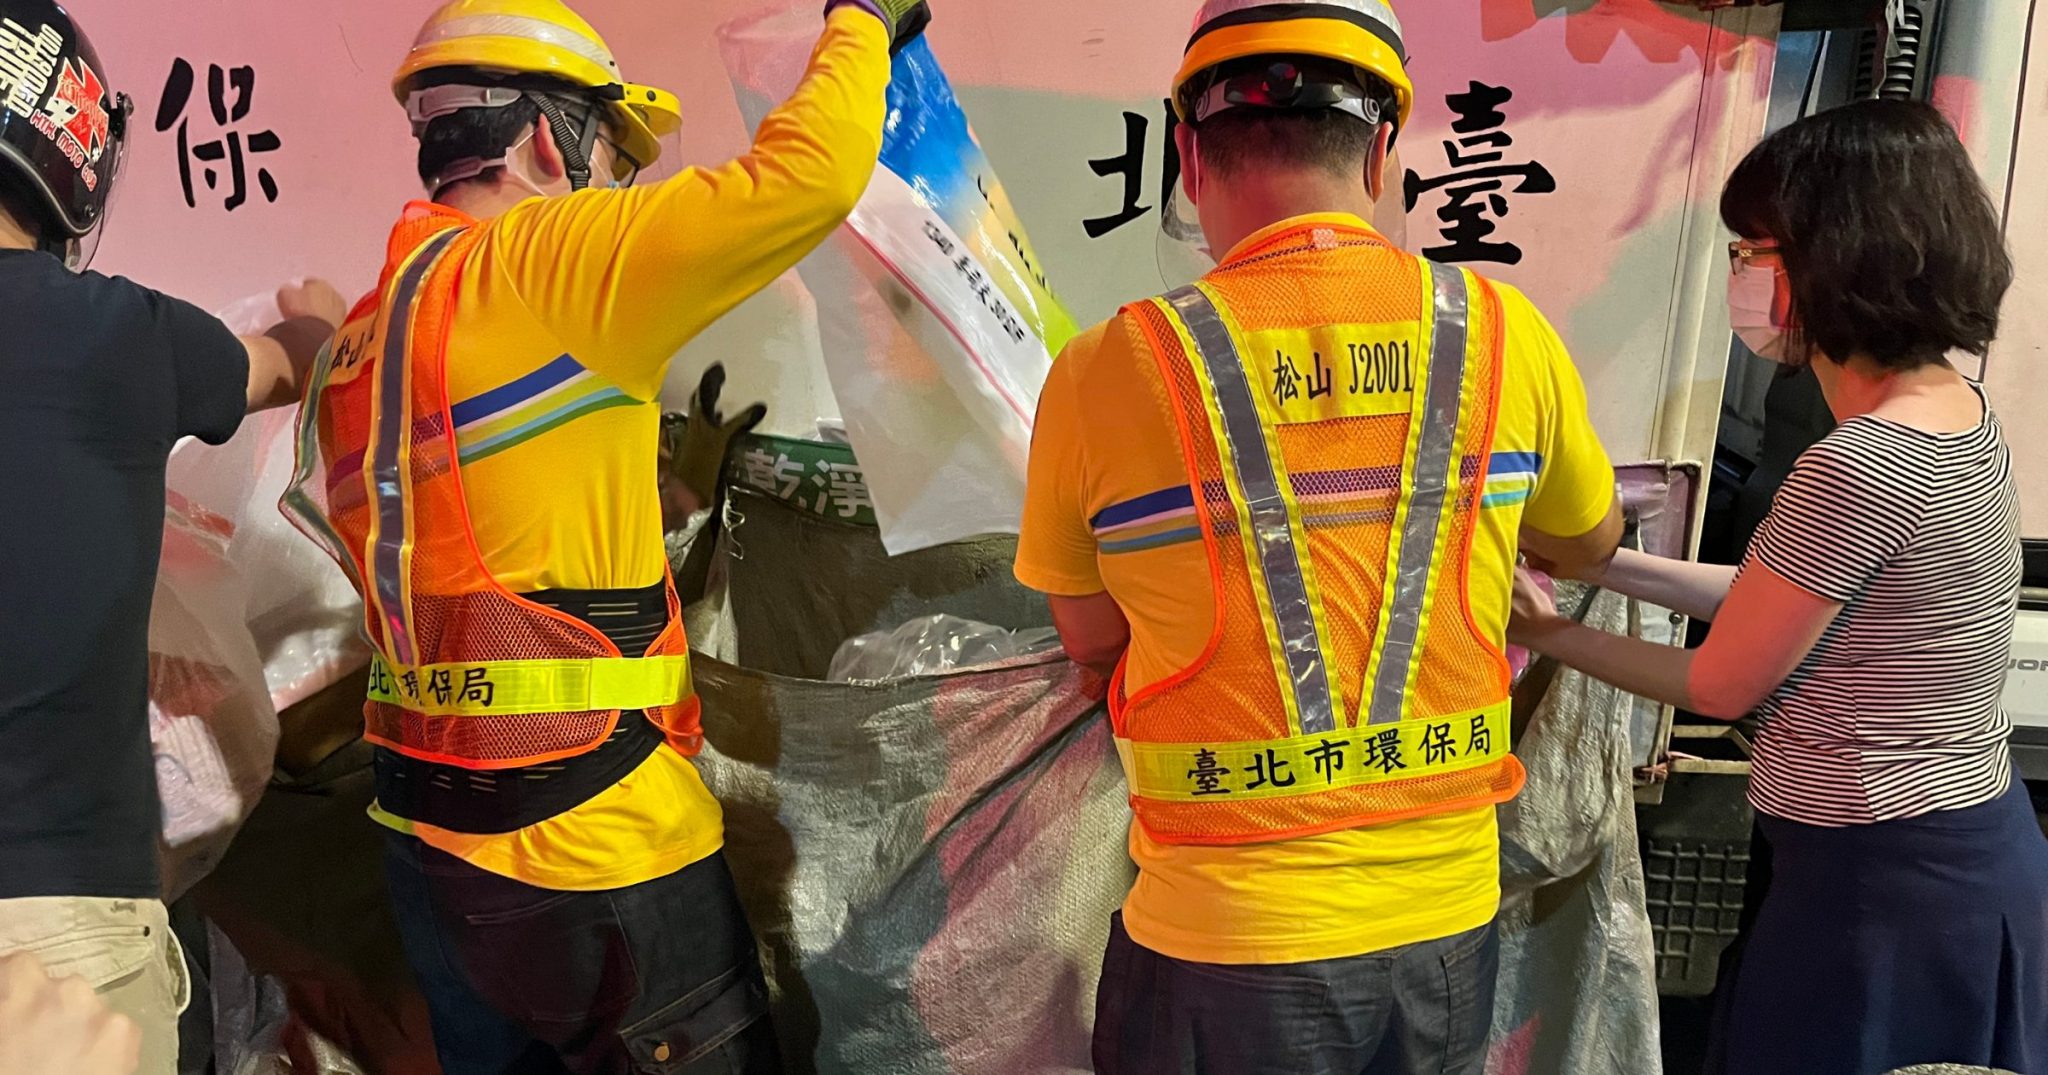 【台湾はリサイクル先進国!】現地ごみ処理事情とエコ活動